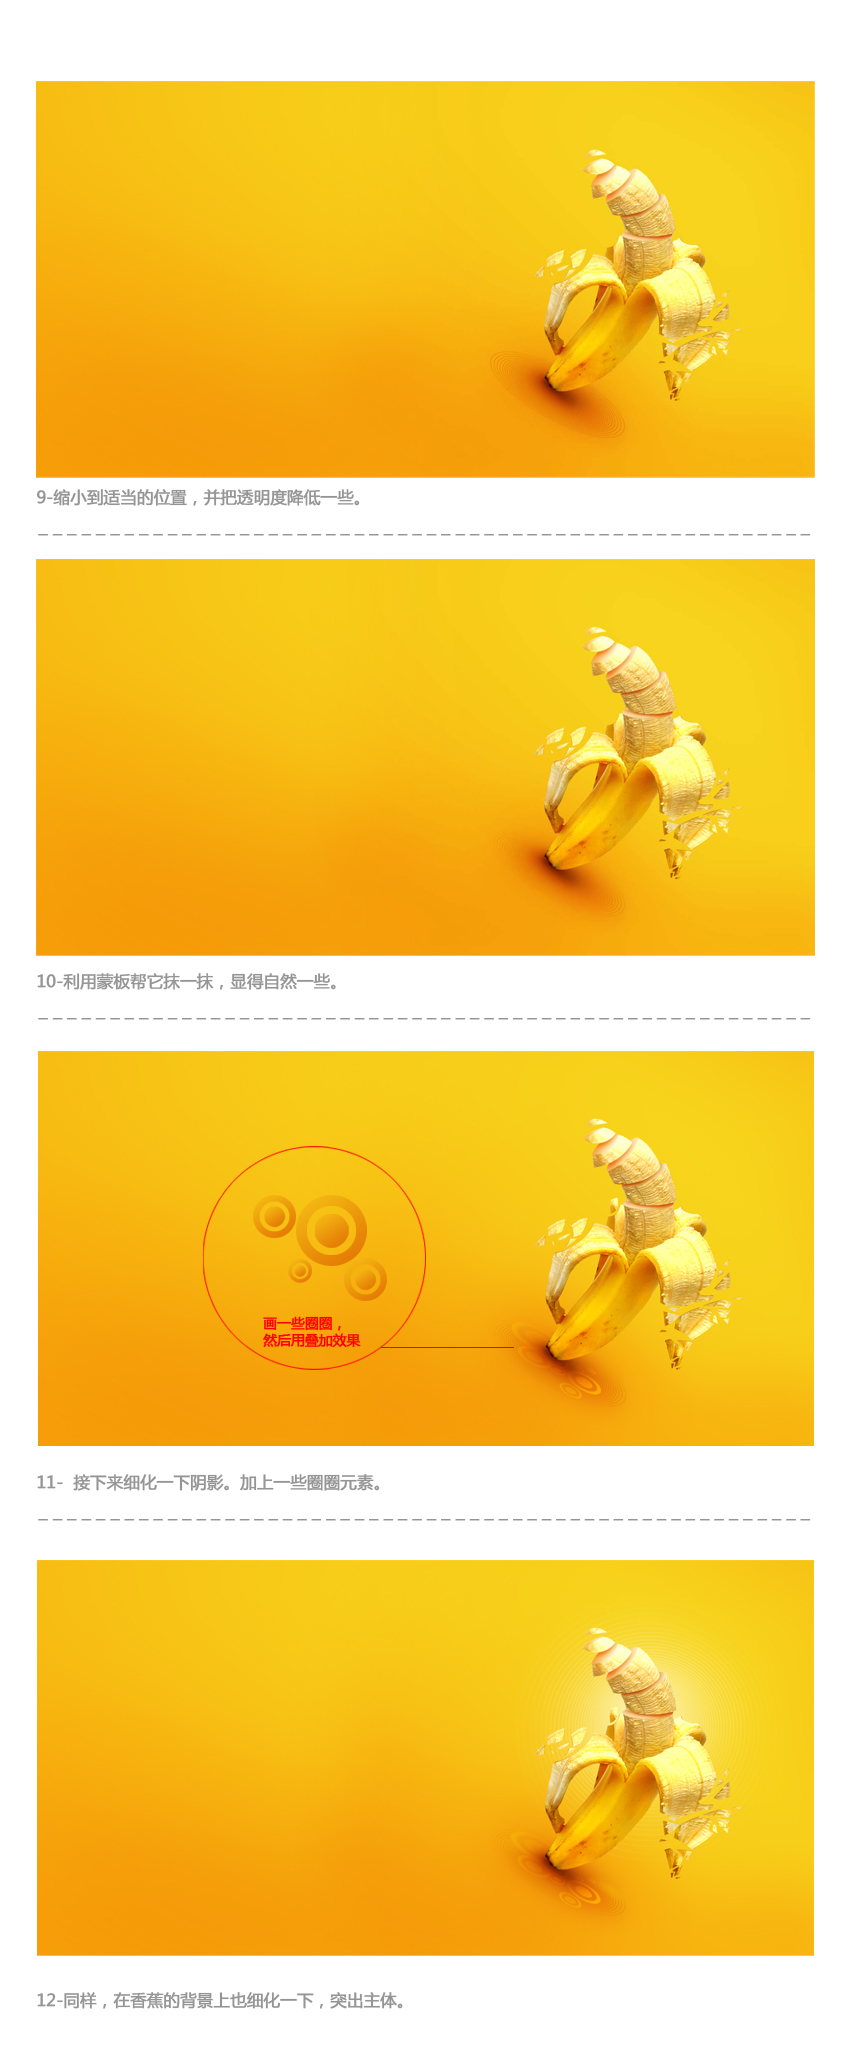 PS打造超炫的香蕉海报教程4